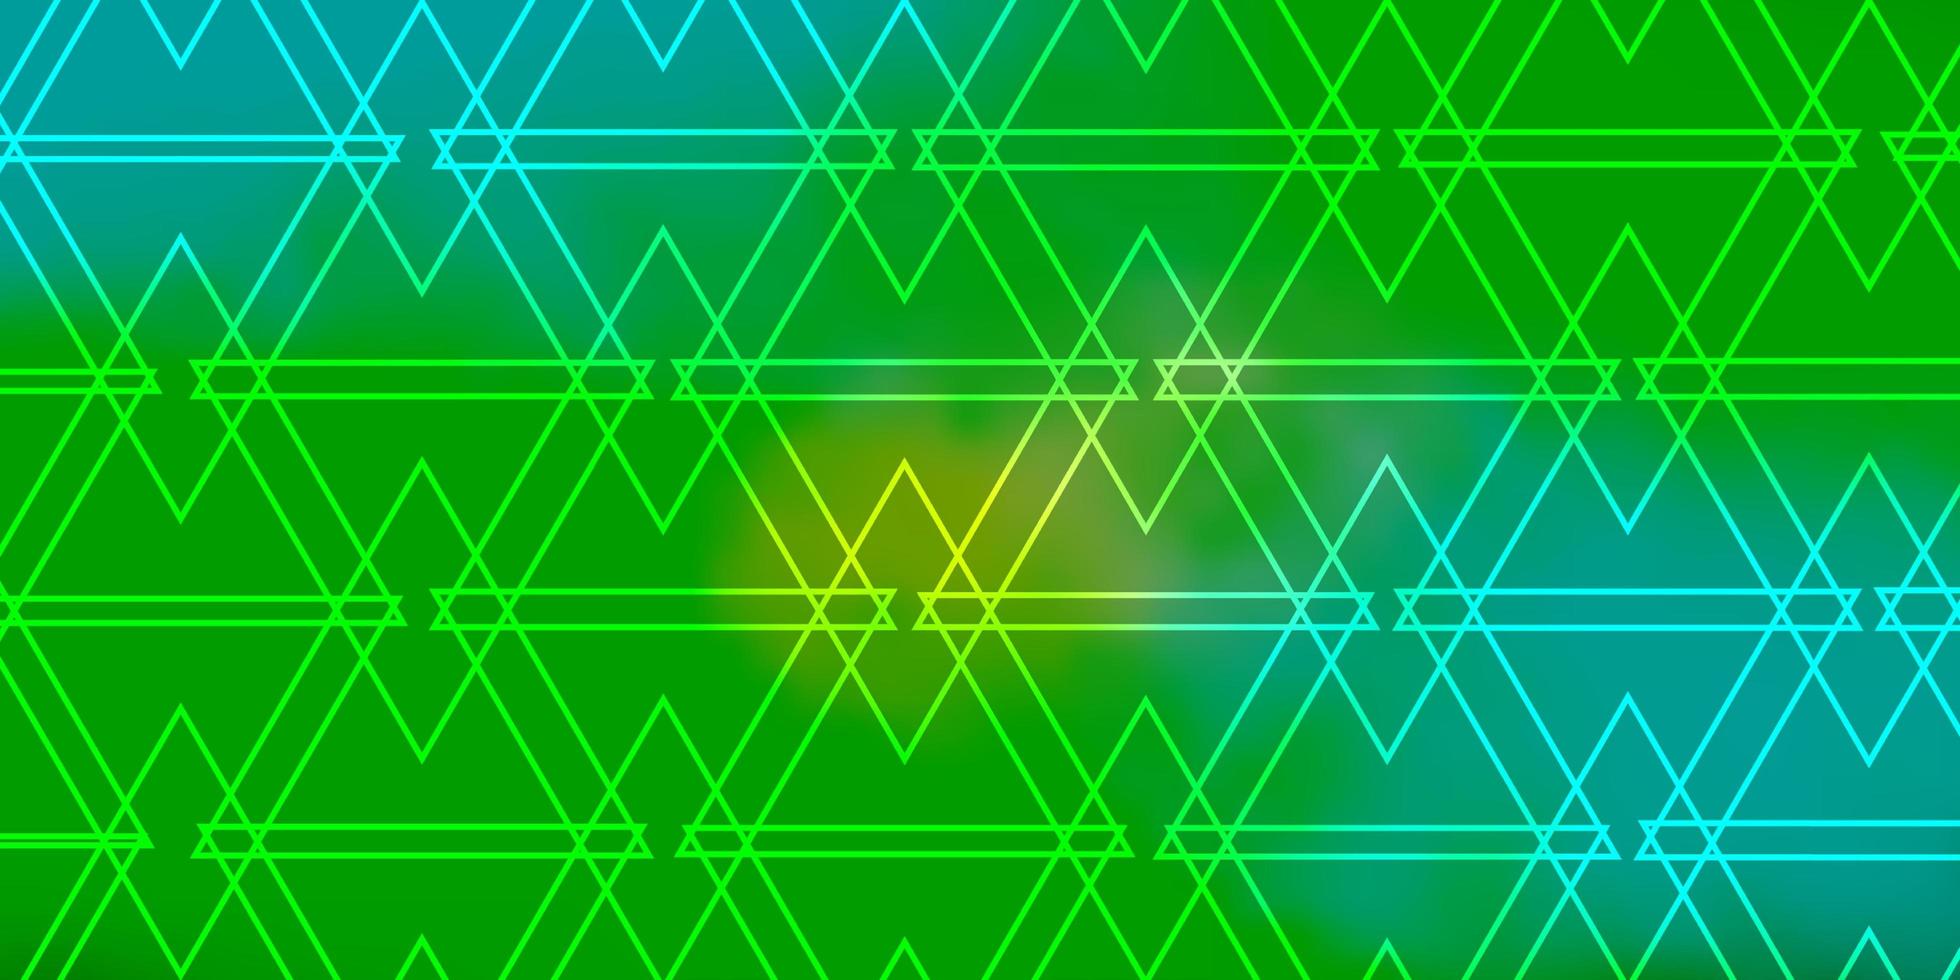 modelo de vetor azul claro e verde com cristais, triângulos. glitter ilustração abstrata com formas triangulares. padrão para sites.